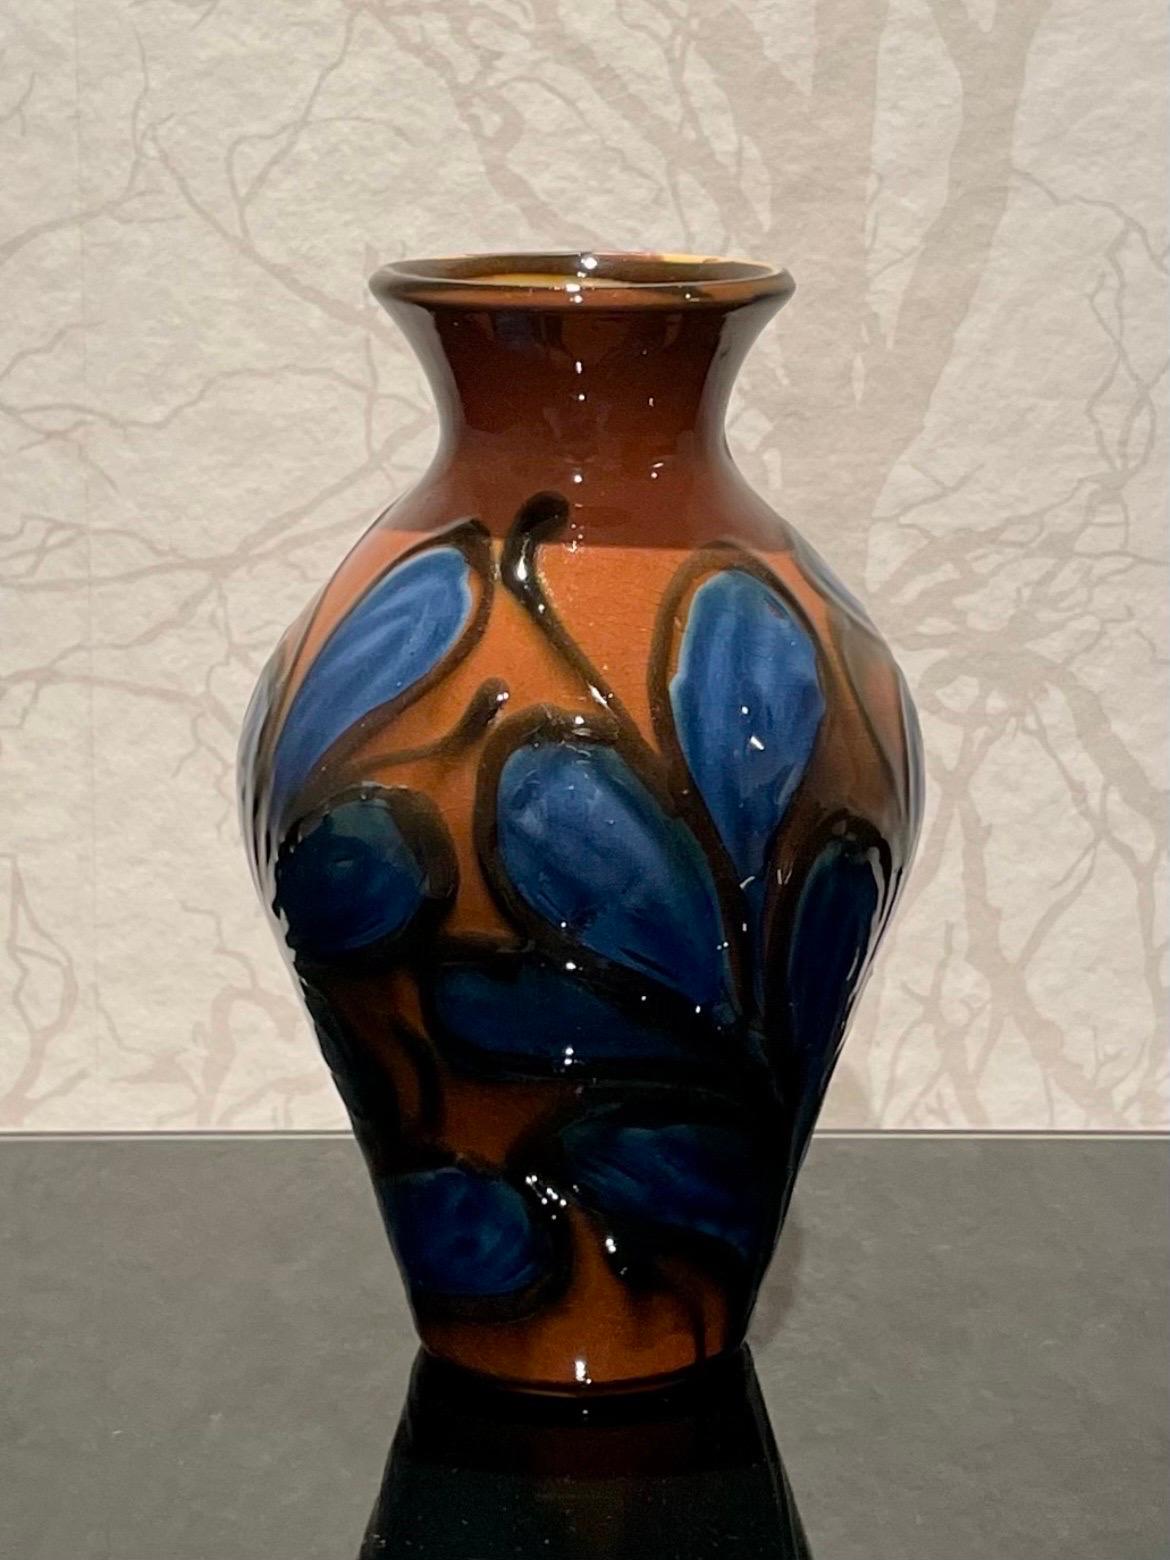 Dies ist die dänische 22 cm hohe Keramikvase von Herman Kähler aus den 1920er Jahren. 

Er hat einen balusterförmigen Körper mit glänzender Oberfläche. Es hat eine schöne Kuh Horn glasiert Muster in muffigen Farben. 
Schwarz gefärbte Kletterpflanzen